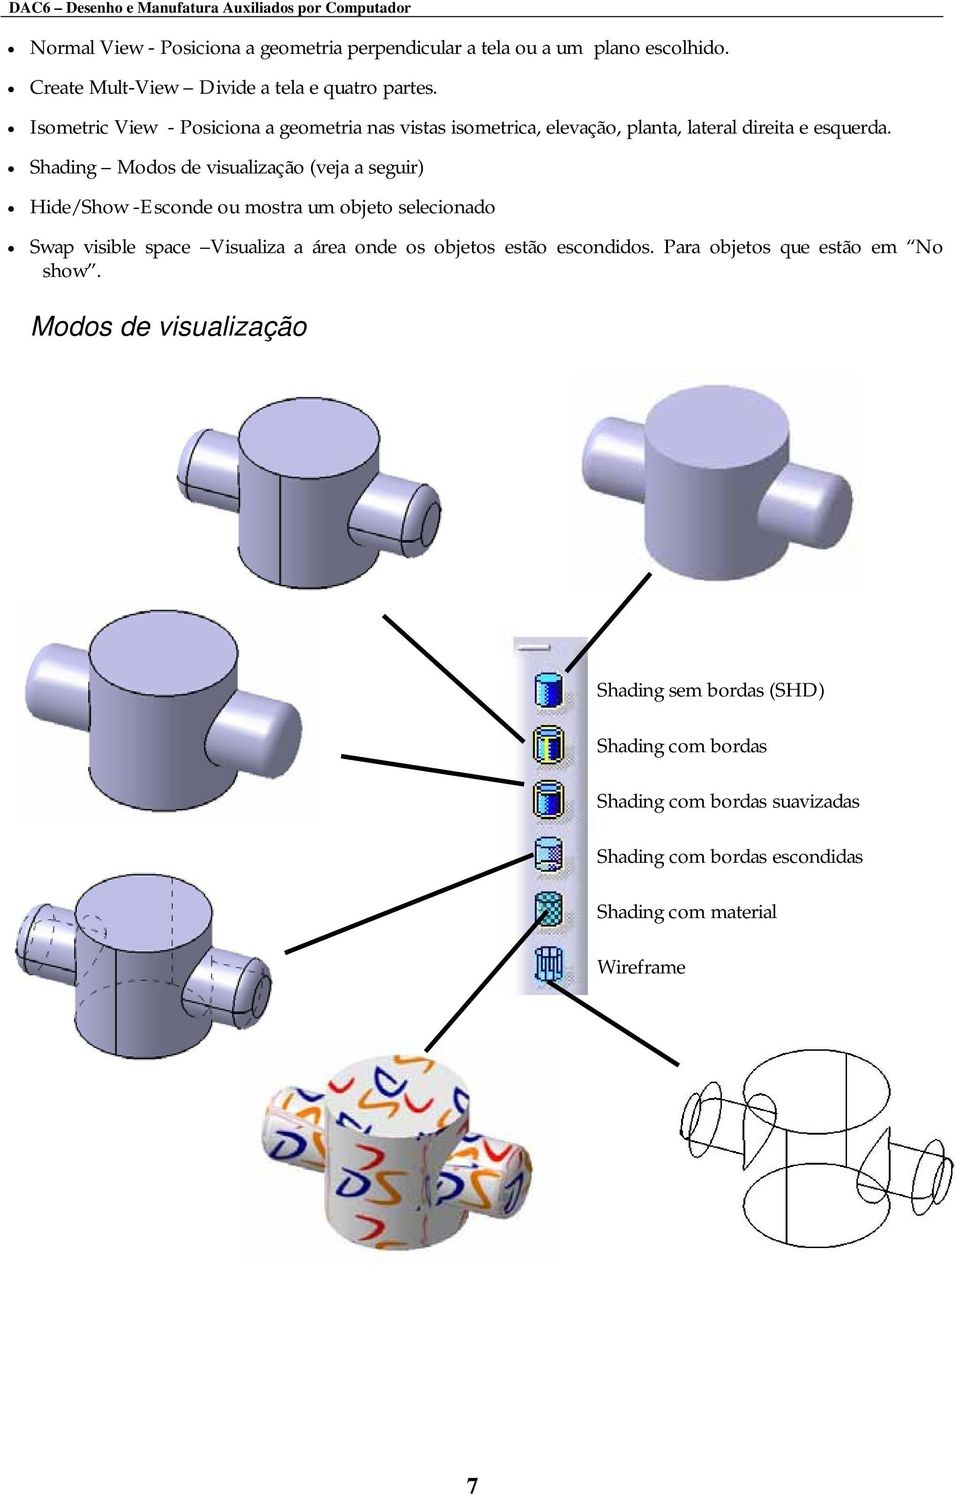 Shading Modos de visualização (veja a seguir) Hide/Show -Esconde ou mostra um objeto selecionado Swap visible space Visualiza a área onde os objetos